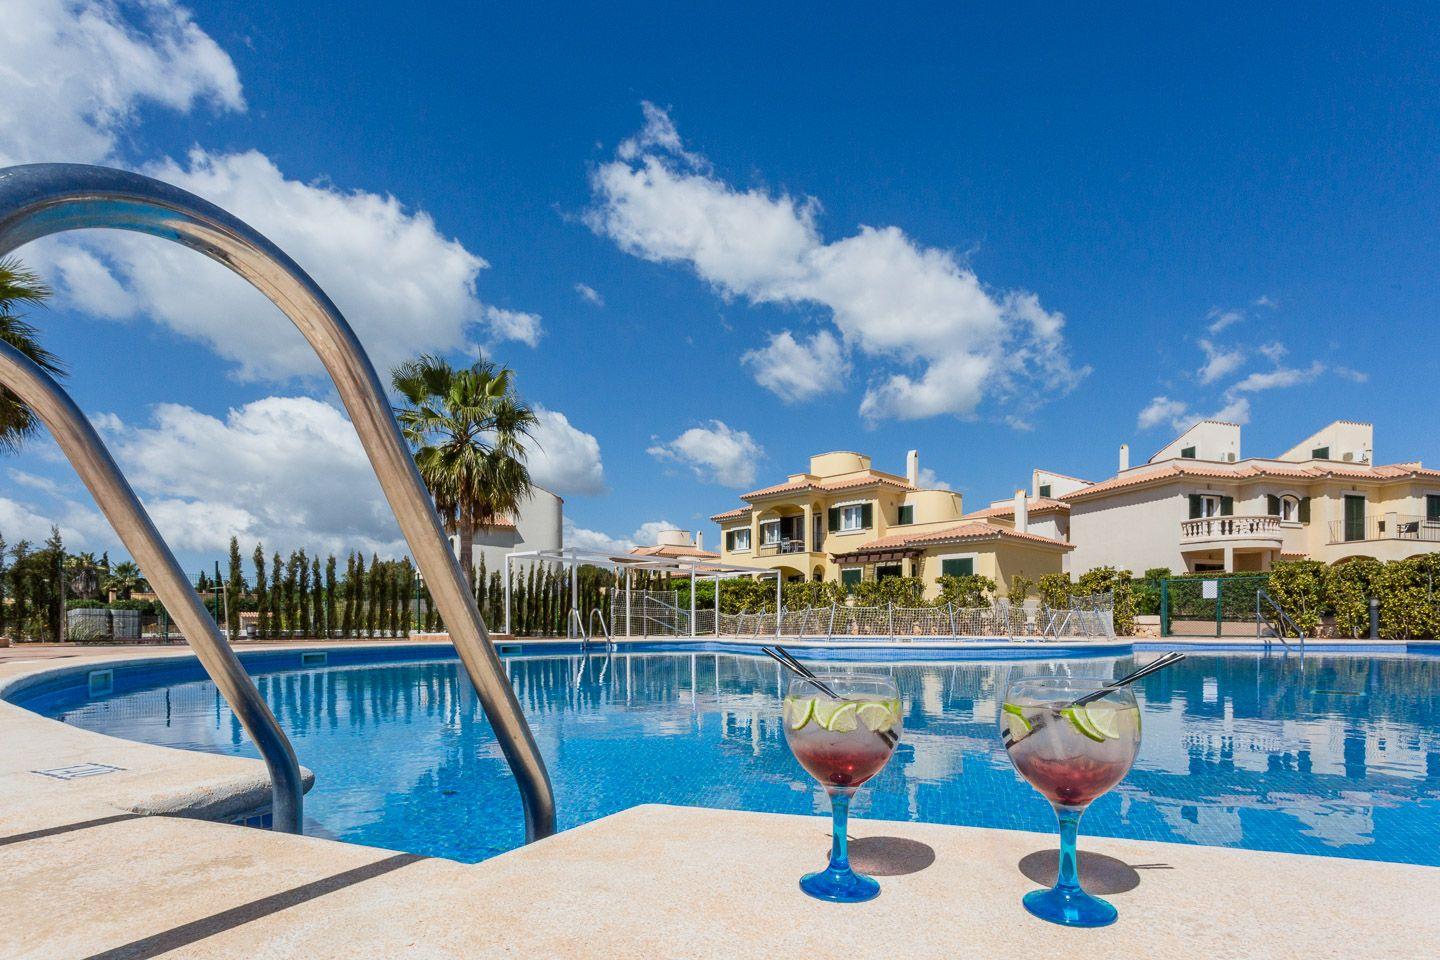 Wohnanlage mit mehreren Apartments und Poolbereich  in Spanien